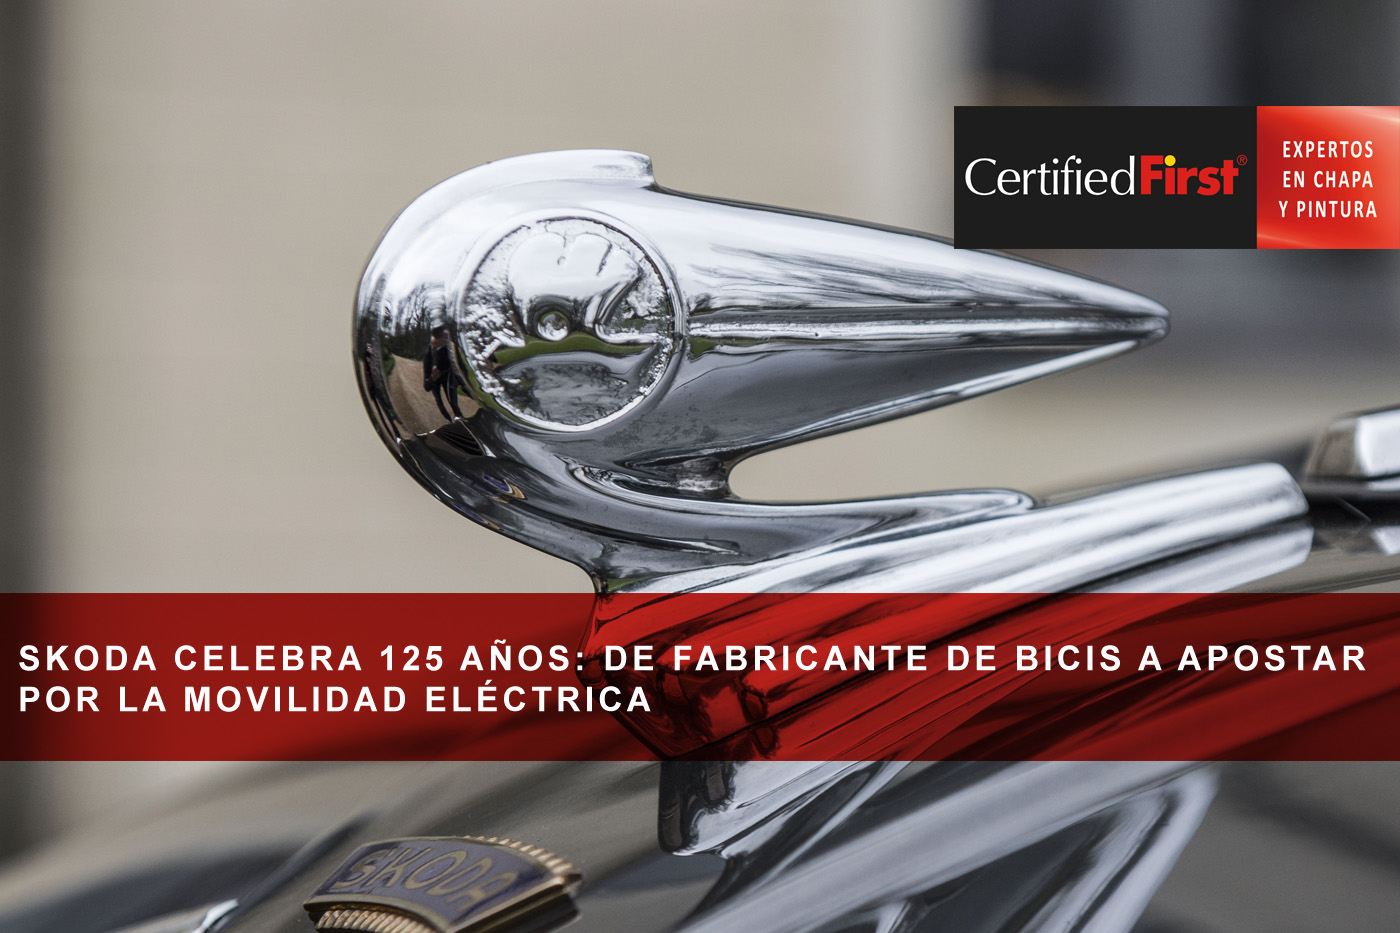 Skoda celebra 125 años: de fabricante de bicis a apostar por la movilidad eléctrica